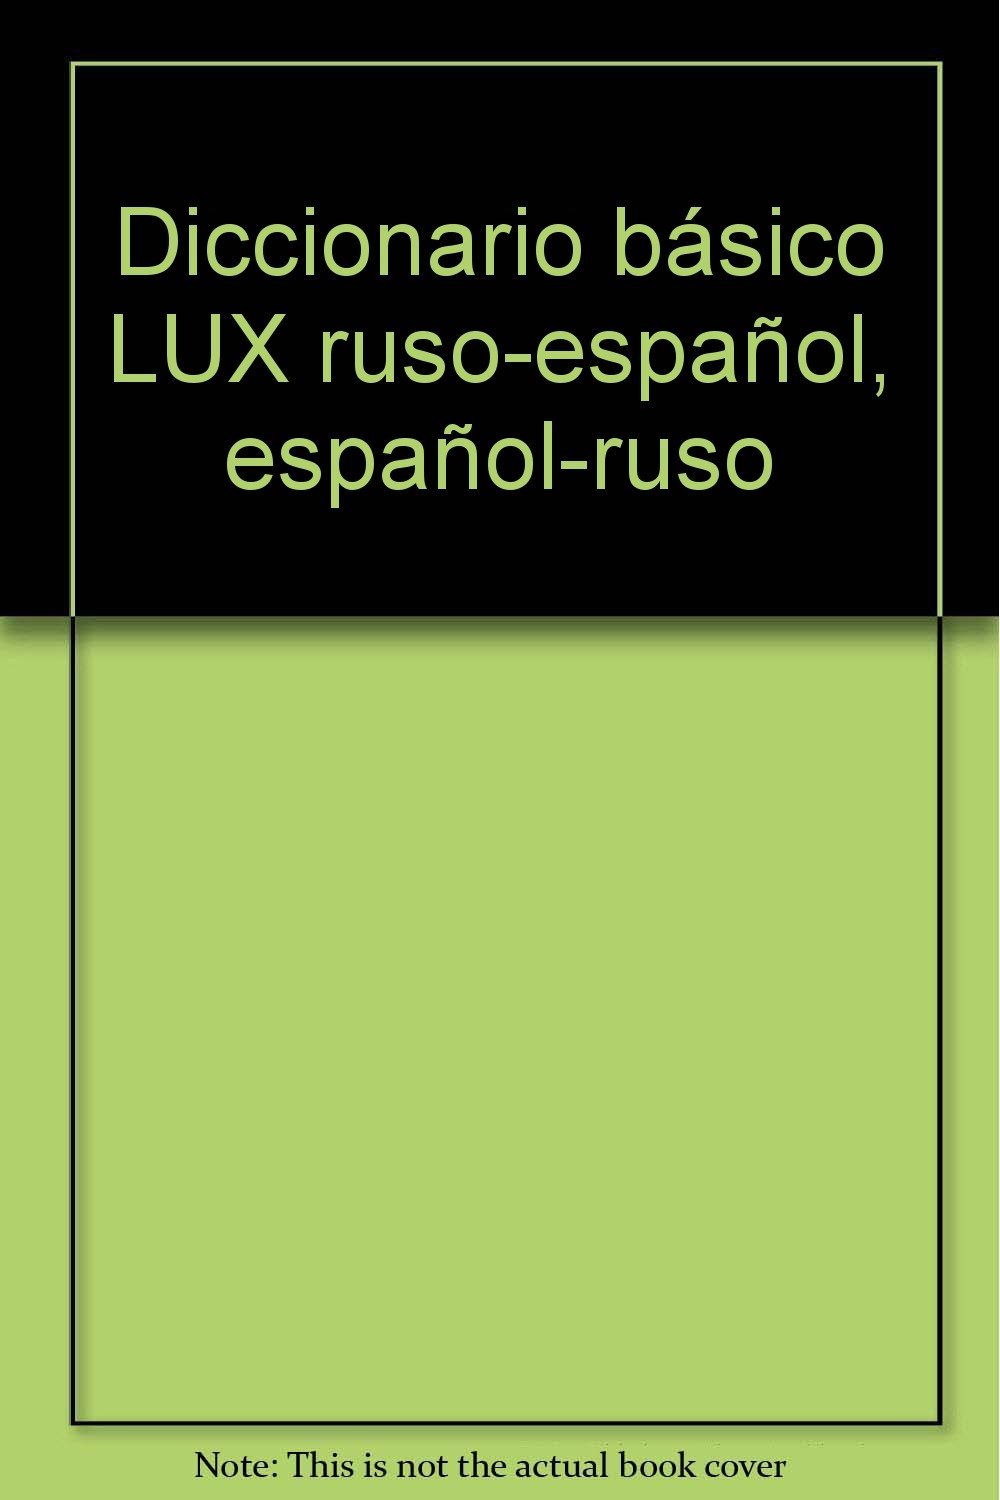 DICCIONARIO BÁSICO LUX RUSO-ESPAÑOL / ESPAÑOL-RUSO